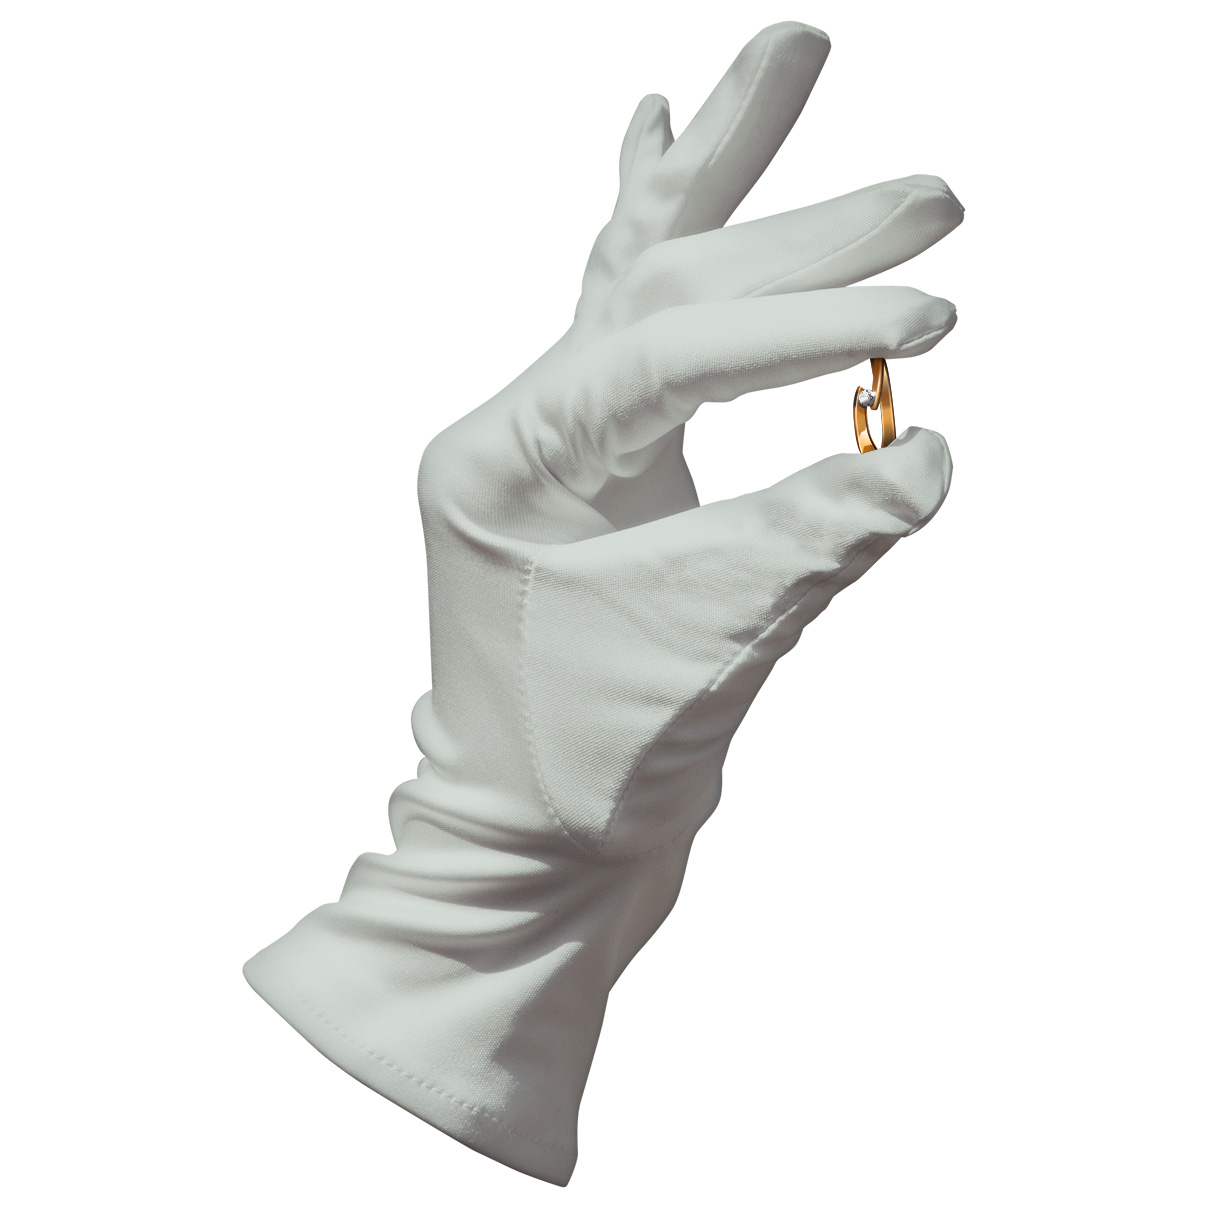 Heli gants de présentation en microfibre, gris-argenté, taille M, 1 paire